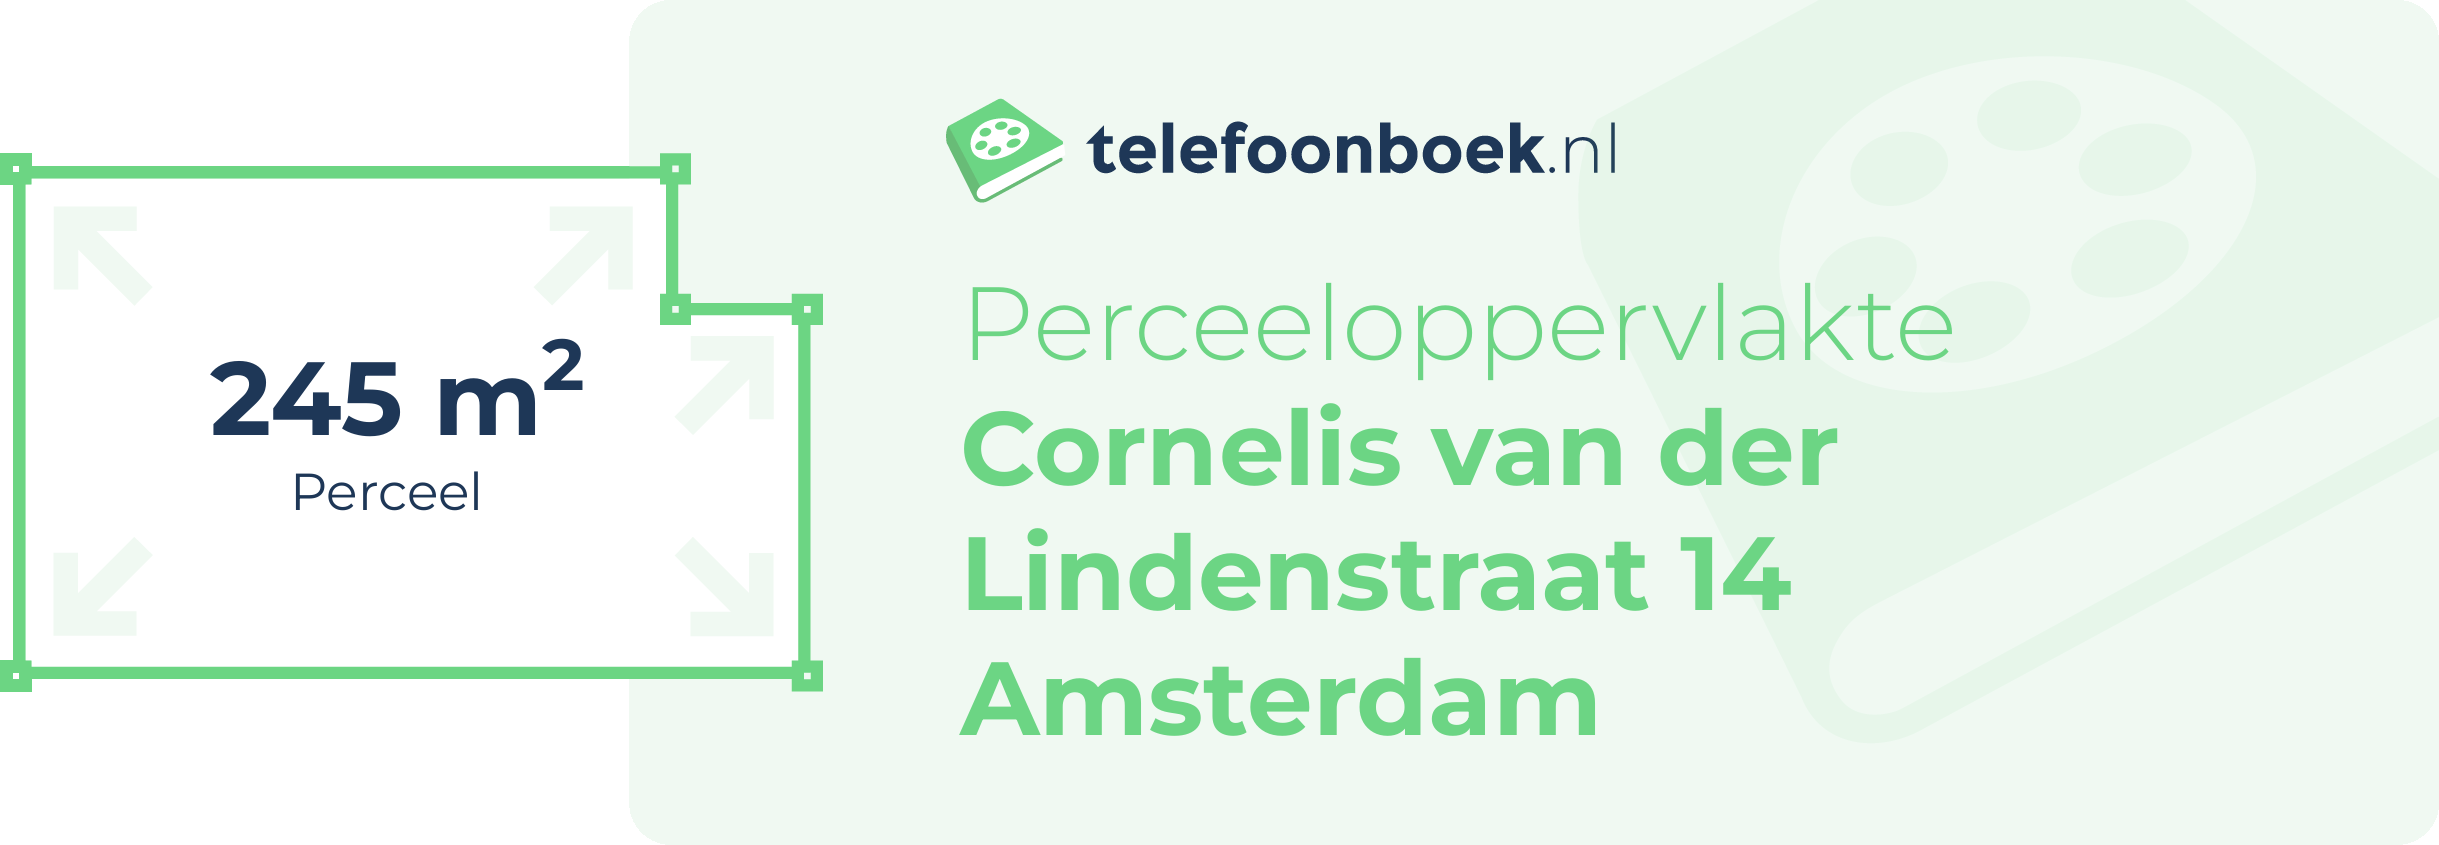 Perceeloppervlakte Cornelis Van Der Lindenstraat 14 Amsterdam